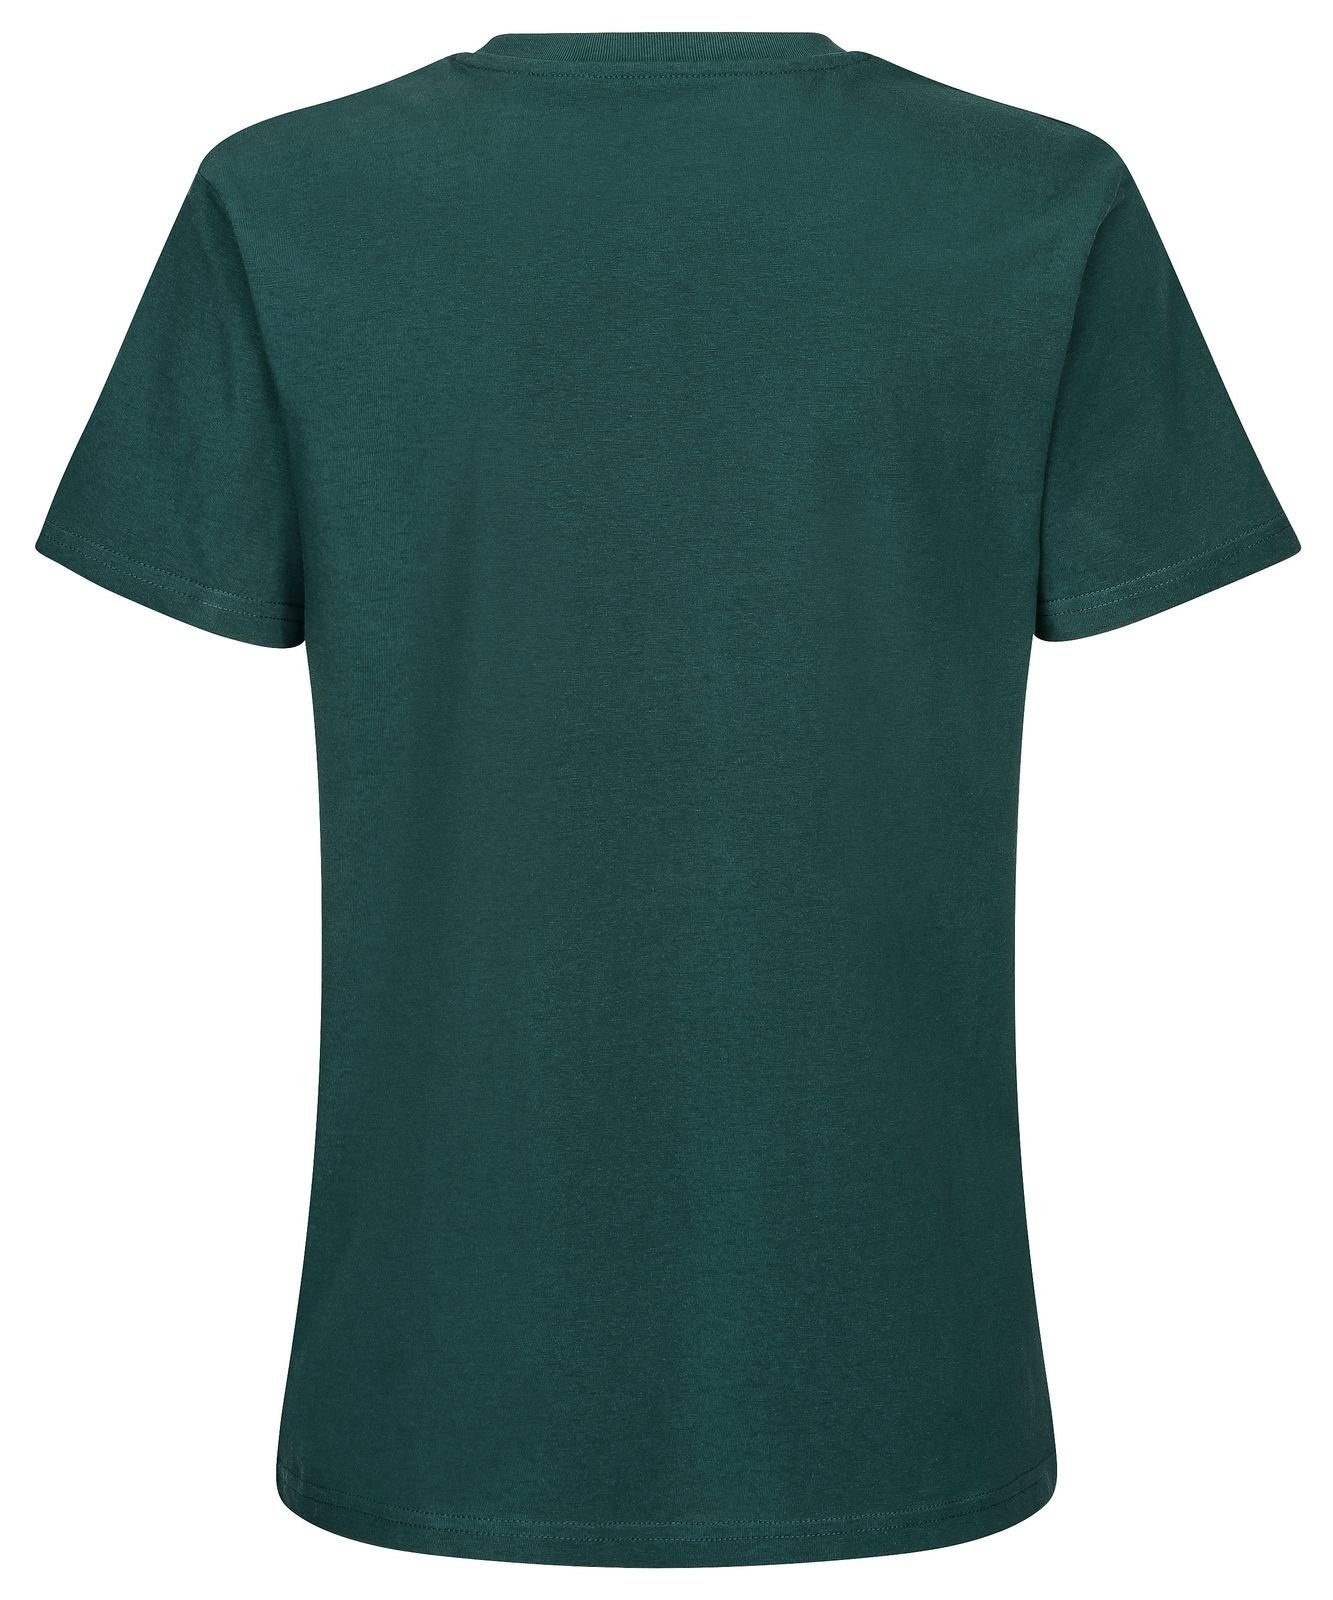 Gradnetz T-Shirt basic leather & dunkelgrün fair 100% nachhaltig unisex Biobaumwolle